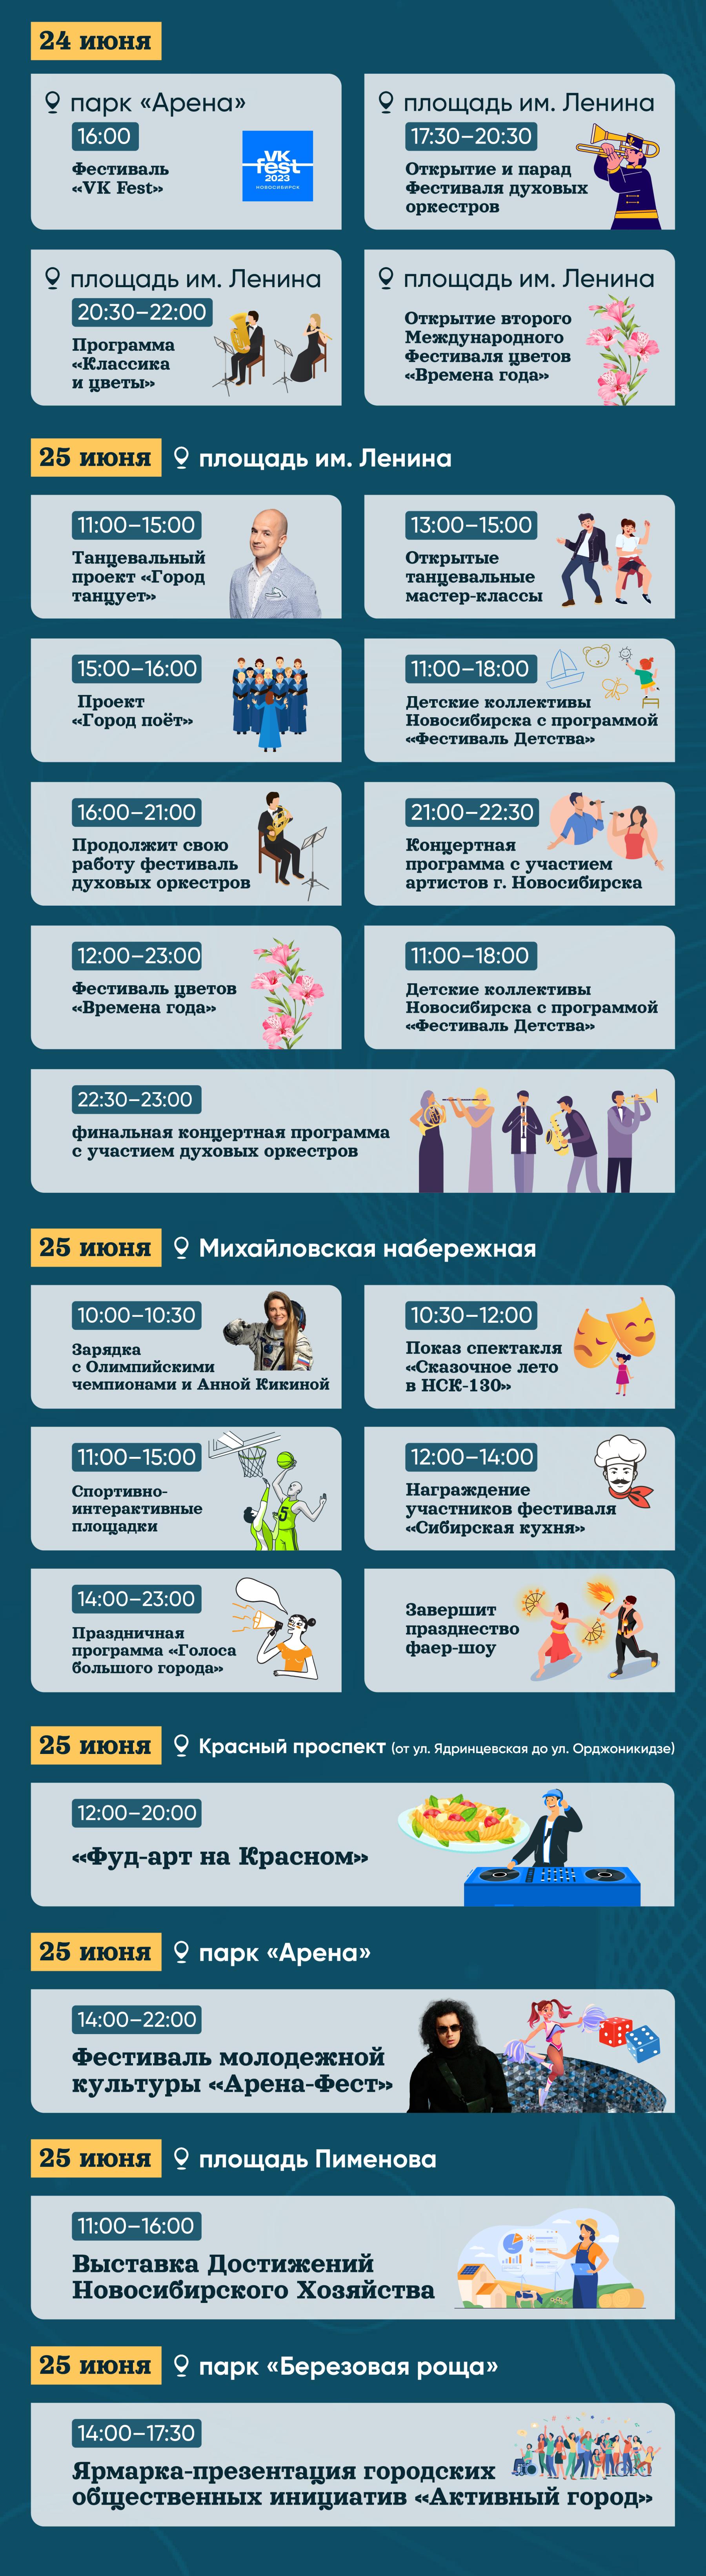 Фото День города-2023: полная программа празднования 130-летия Новосибирска 3